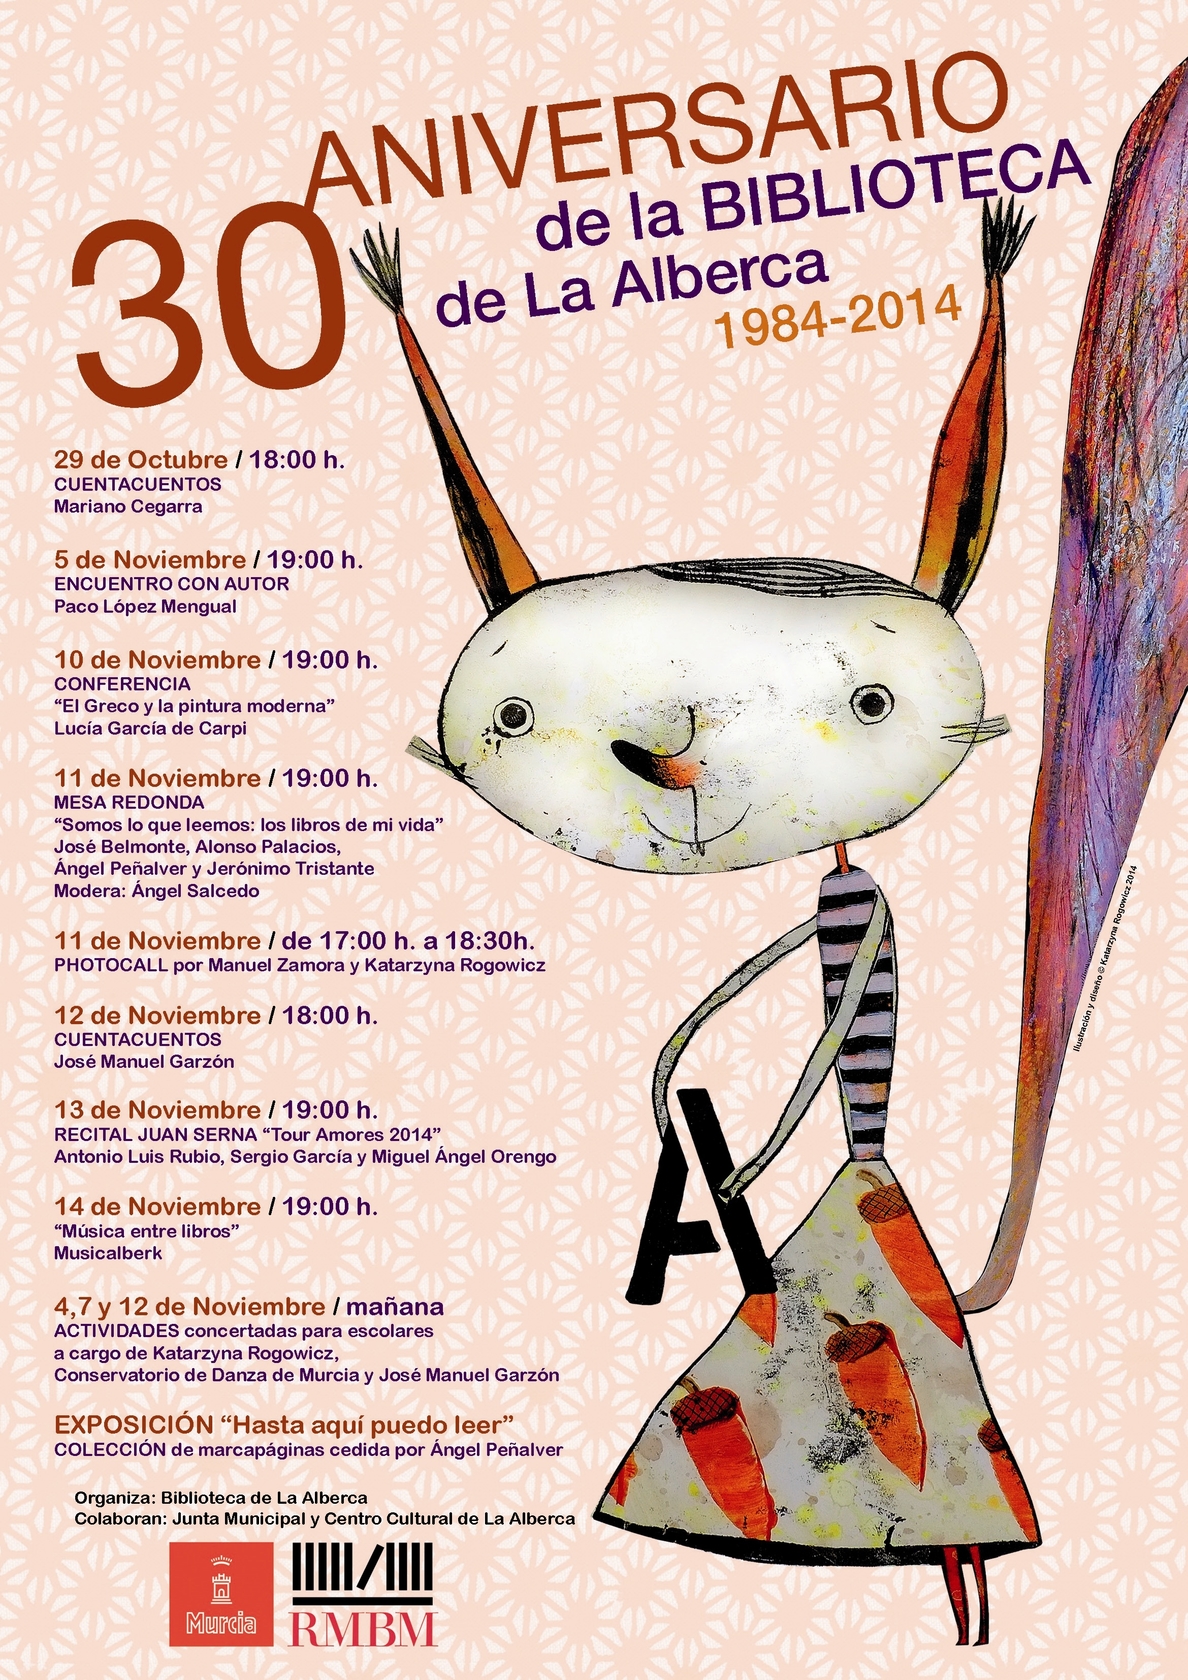 La Biblioteca pública de La Alberca celebra su 30 Aniversario con multitud de eventos y estrenando una ardilla mascota